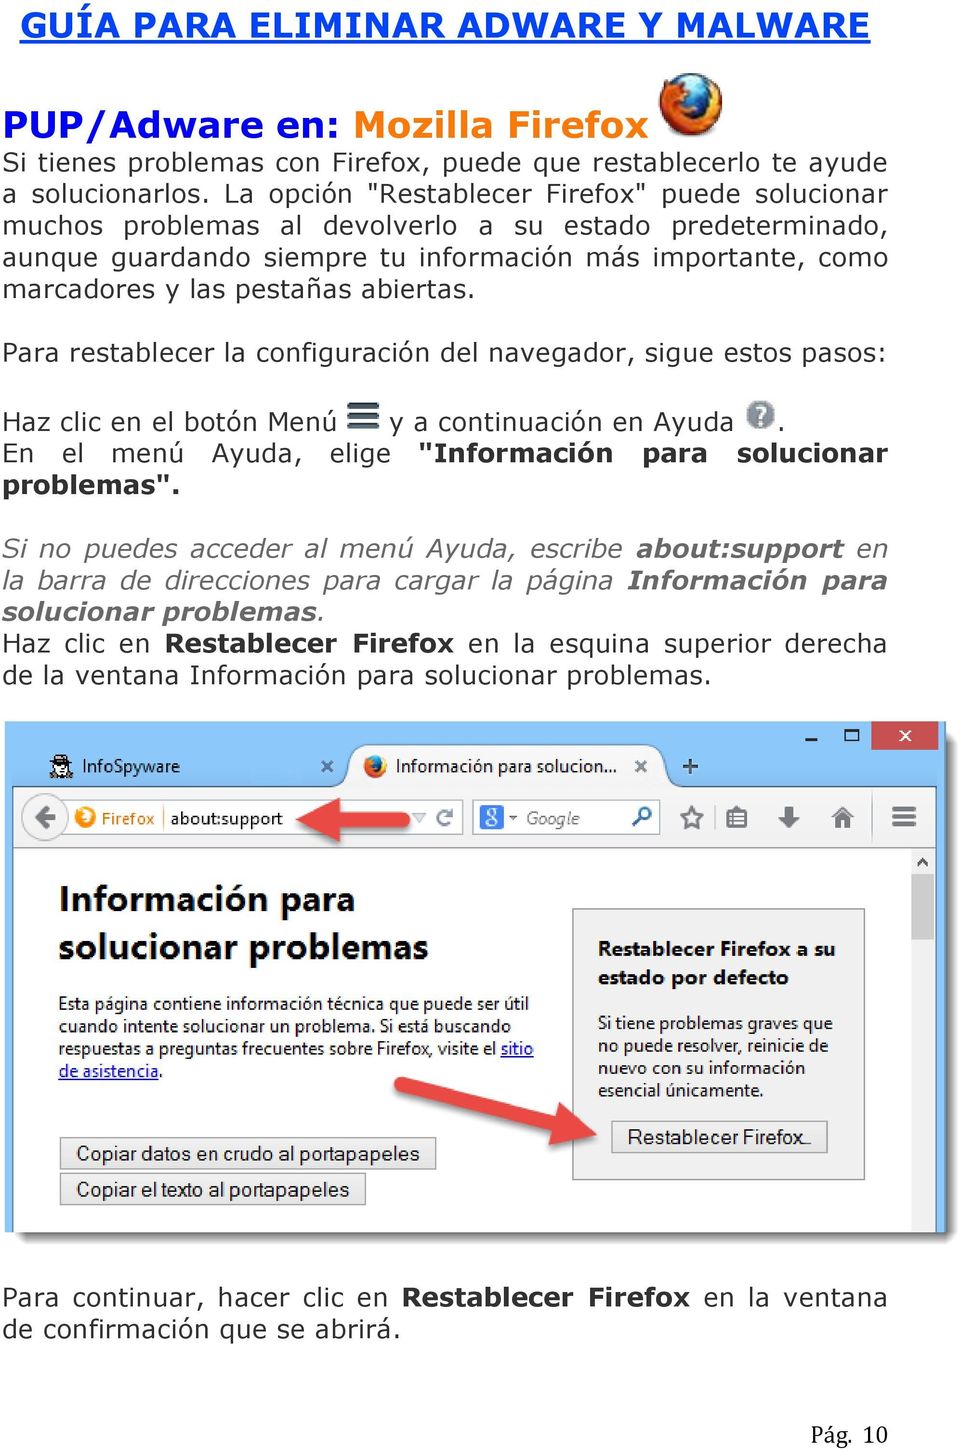 abiertas. Para restablecer la configuración del navegador, sigue estos pasos: Haz clic en el botón Menú y a continuación en Ayuda. En el menú Ayuda, elige "Información para solucionar problemas".